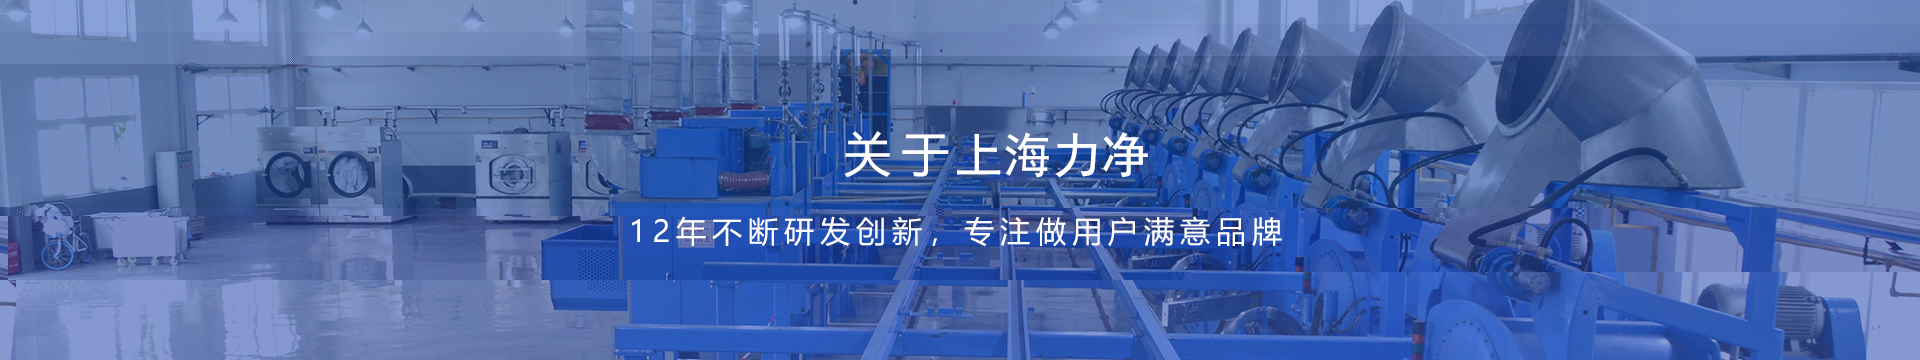 上海凯发k8一触即发工业集成洗涤设备